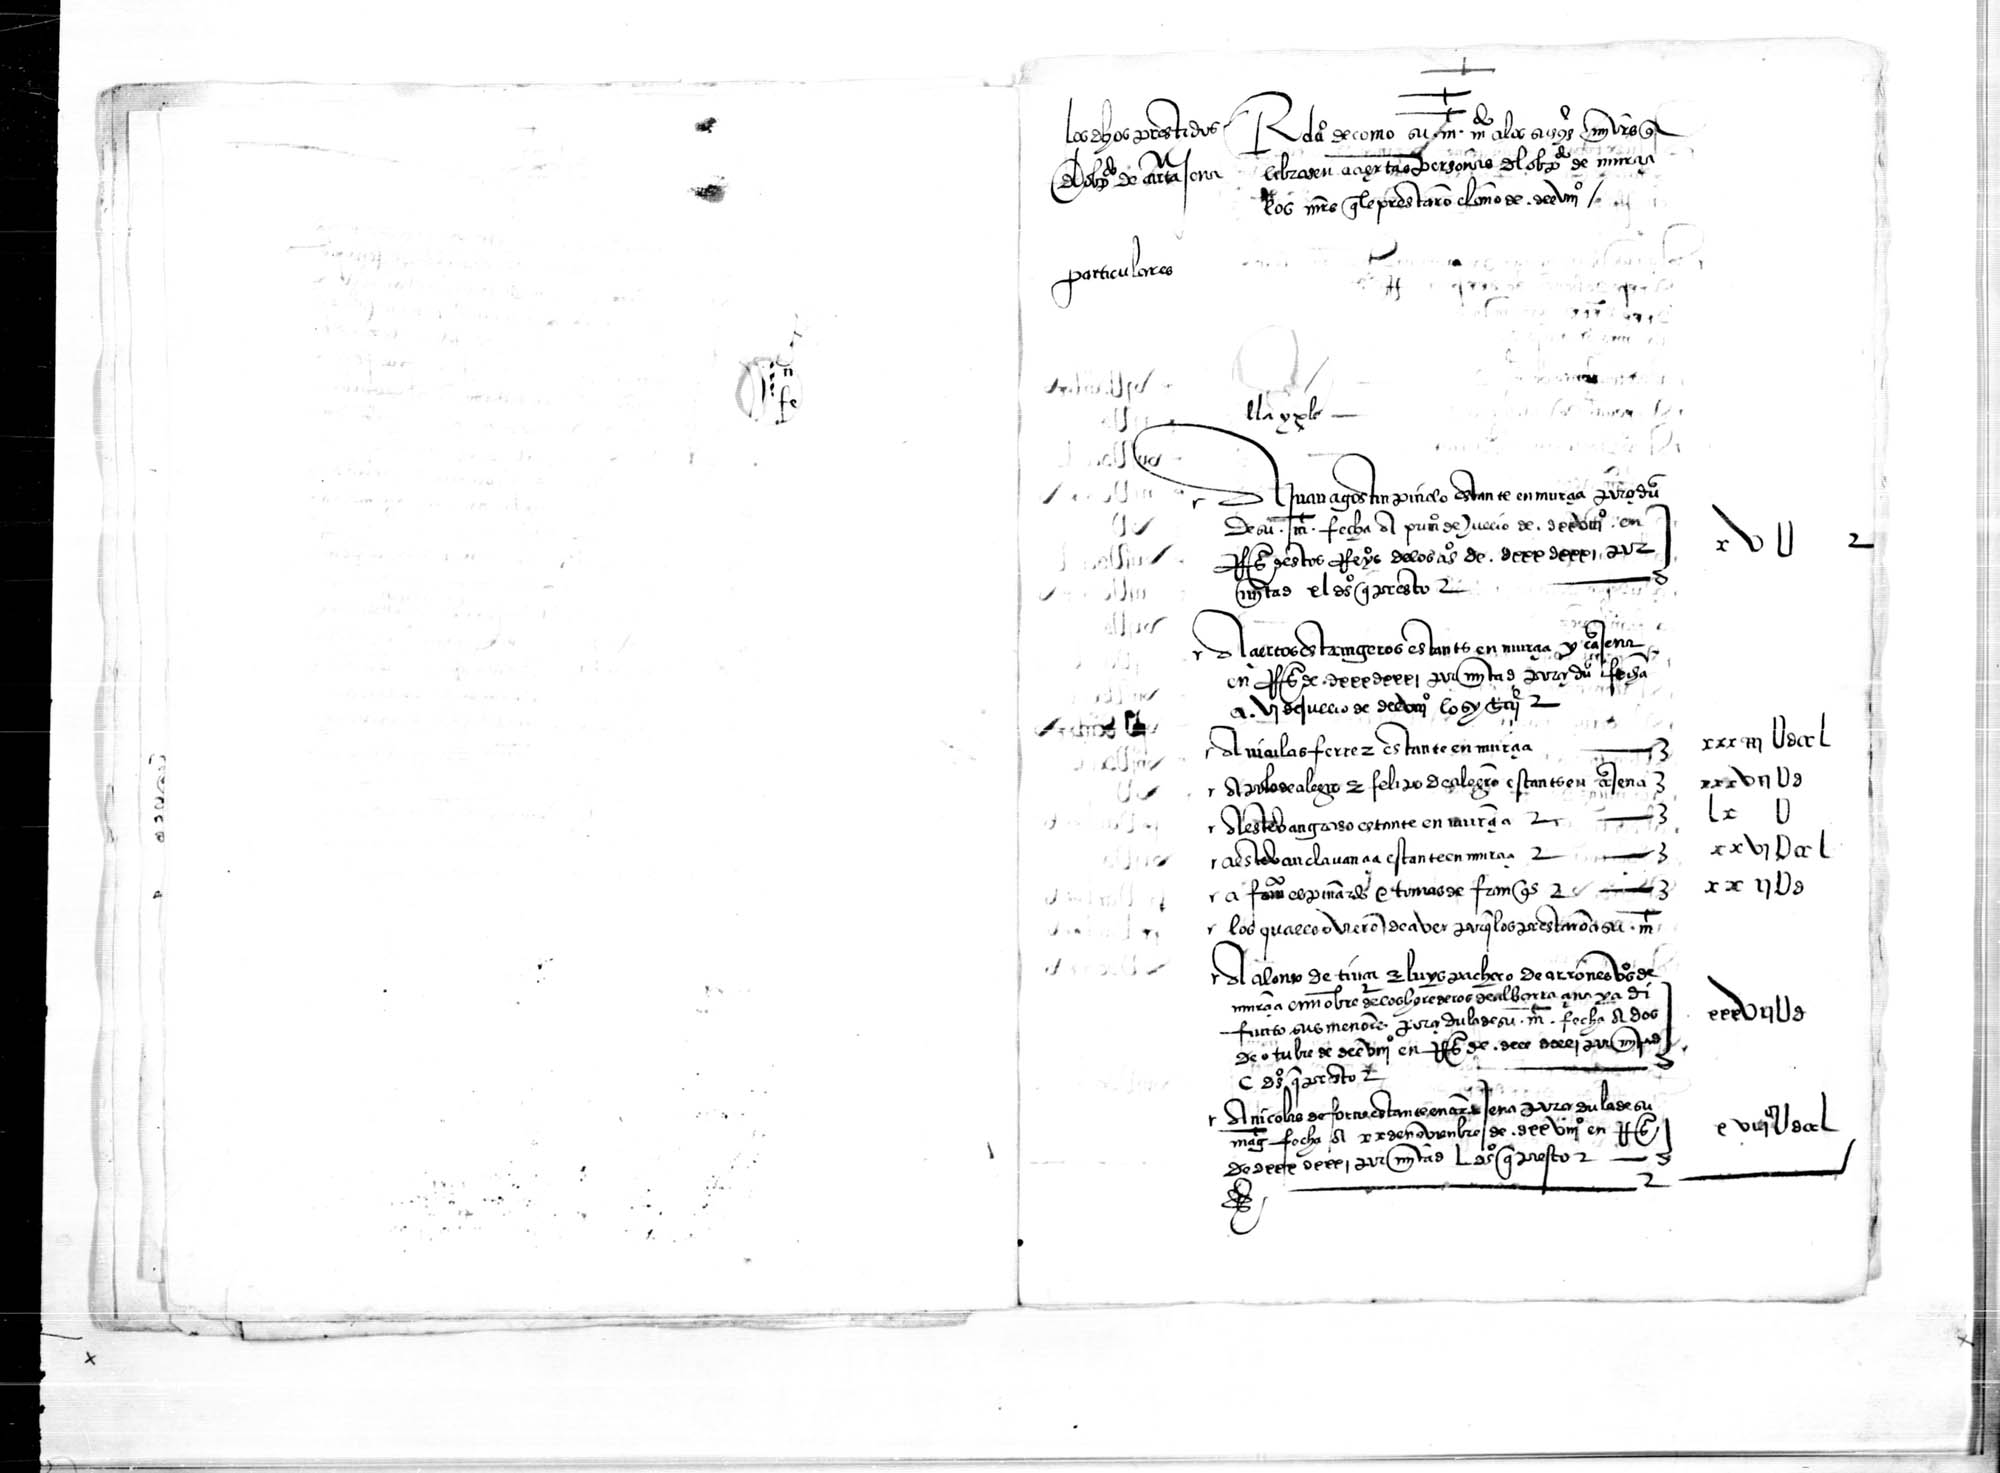 Relación de las personas particulares  de Murcia, Cartagena y Liétor y cantidades que prestaron a la Corona en 1528, para que los contadores mayores se las devolvieran.